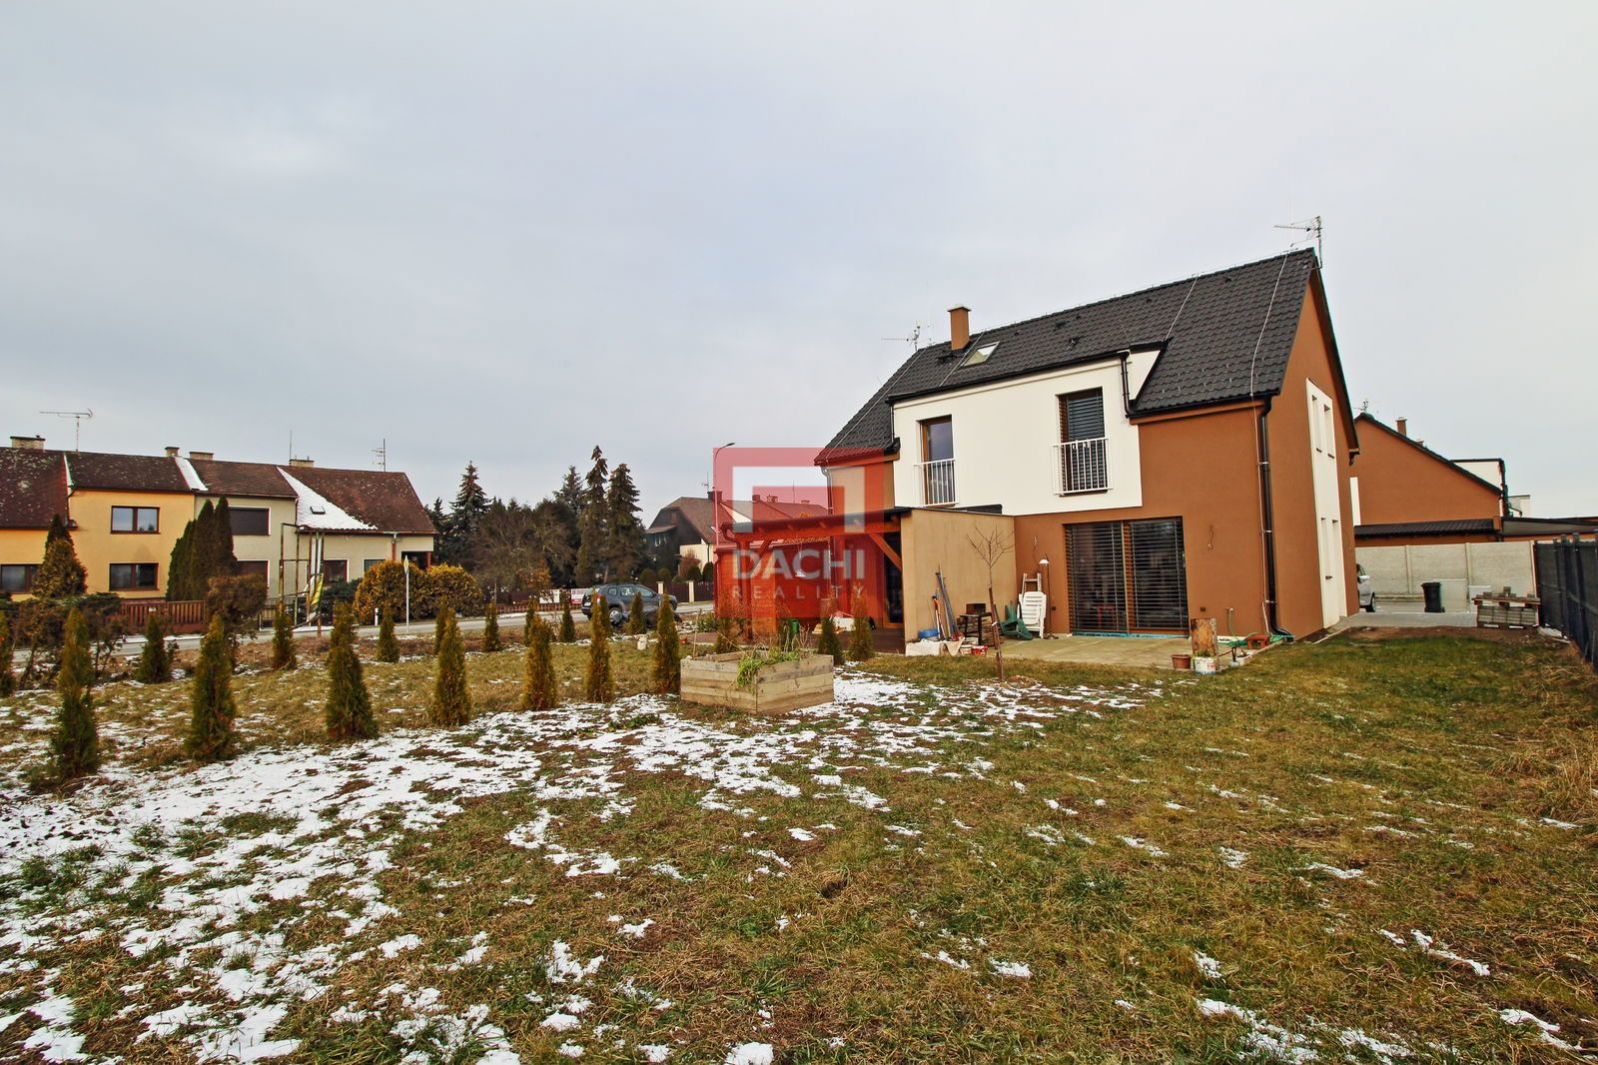 Výhradní prodej bytu 4+kk, 116 m2 s terasou i zahradou 264 m2 v obci Horka nad Moravou, obrázek č. 1